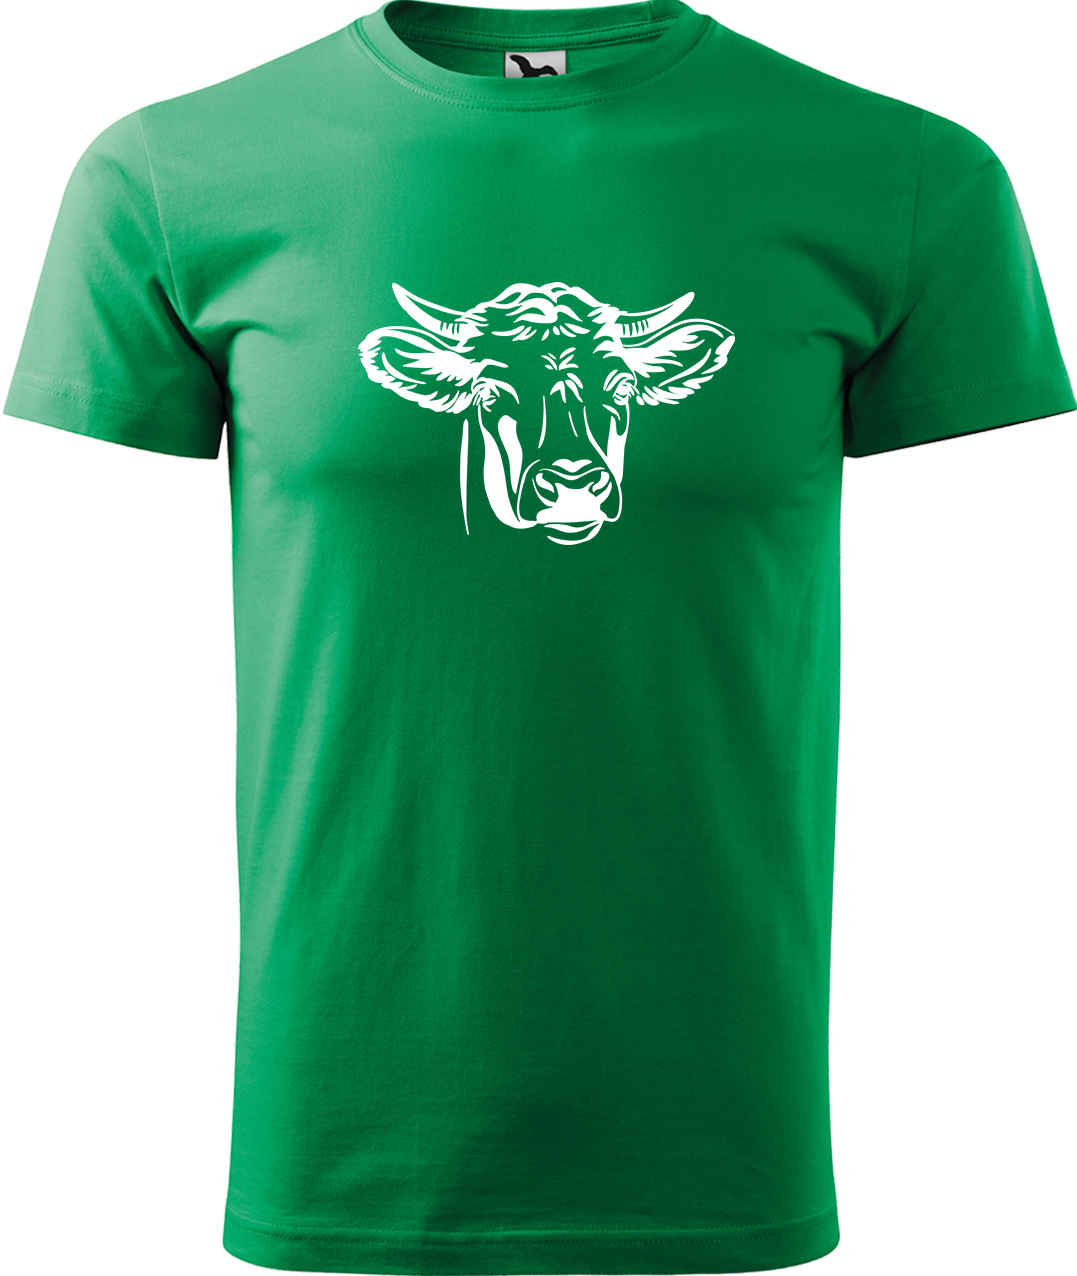 Pánské tričko s krávou - Hlava krávy Velikost: L, Barva: Středně zelená (16), Střih: pánský